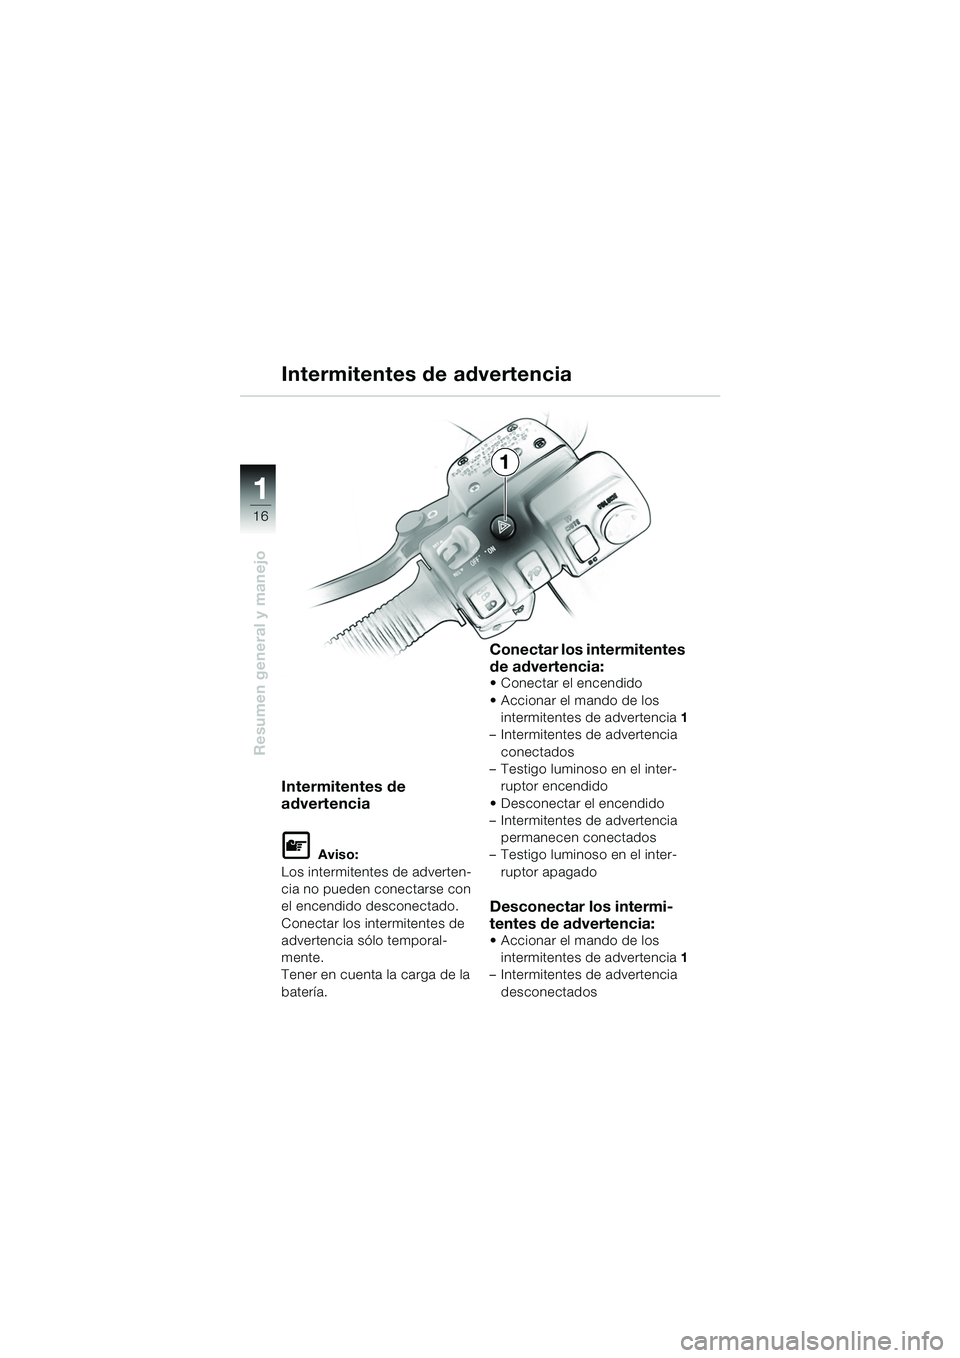 BMW MOTORRAD K 1200 LT 2005  Manual de instrucciones (in Spanish) 16
Resumen general y manejo
1
Intermitentes de advertencia
Intermitentes de 
advertencia
L Aviso:
Los intermitentes de adverten-
cia no pueden conectarse con 
el encendido desconectado.
Conectar los i